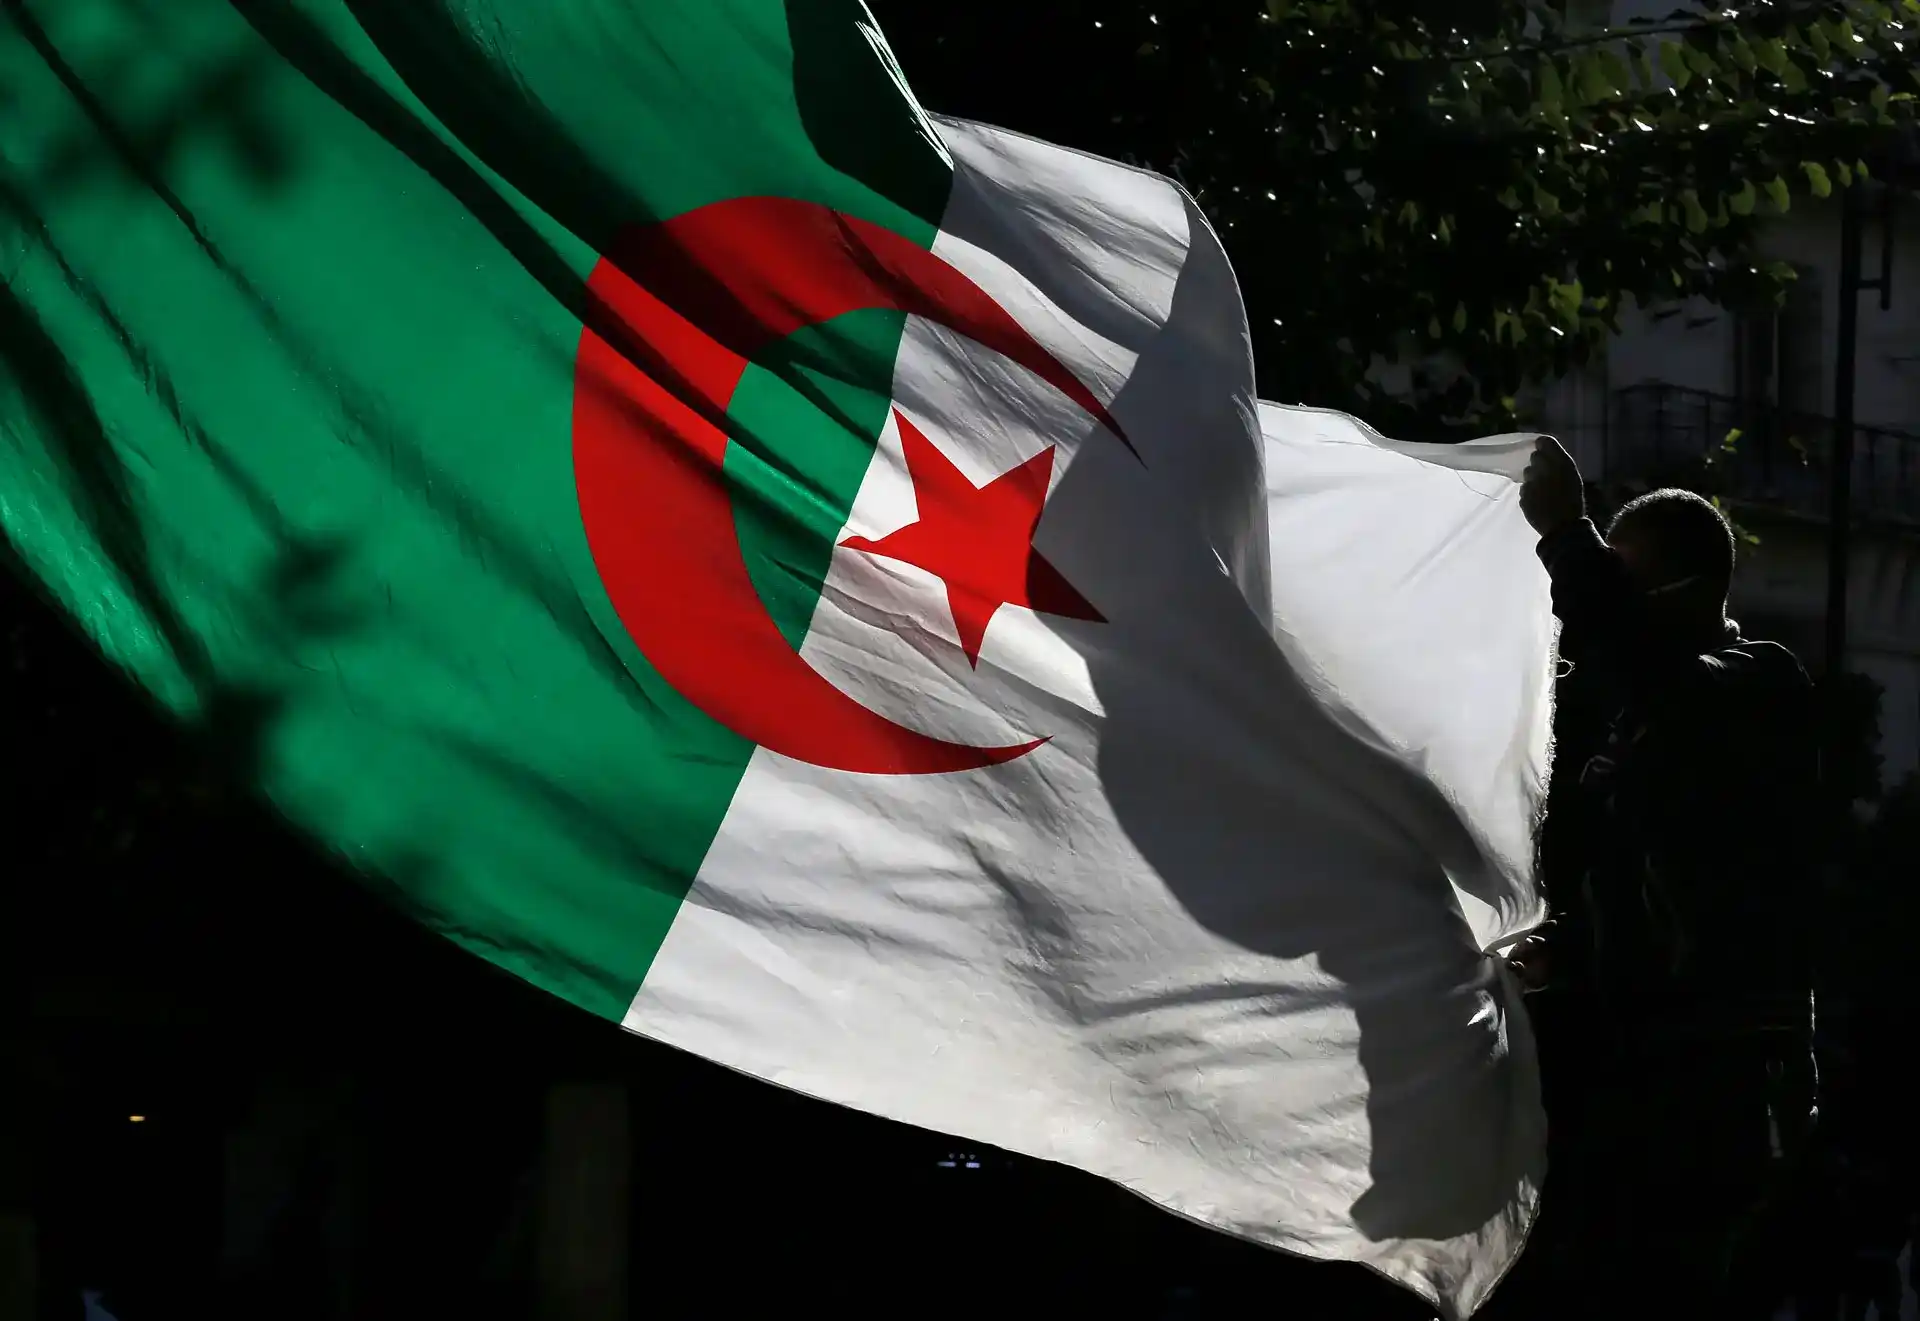 Complexités de la normalisation des relations internationales : L'exemple de l'Algérie